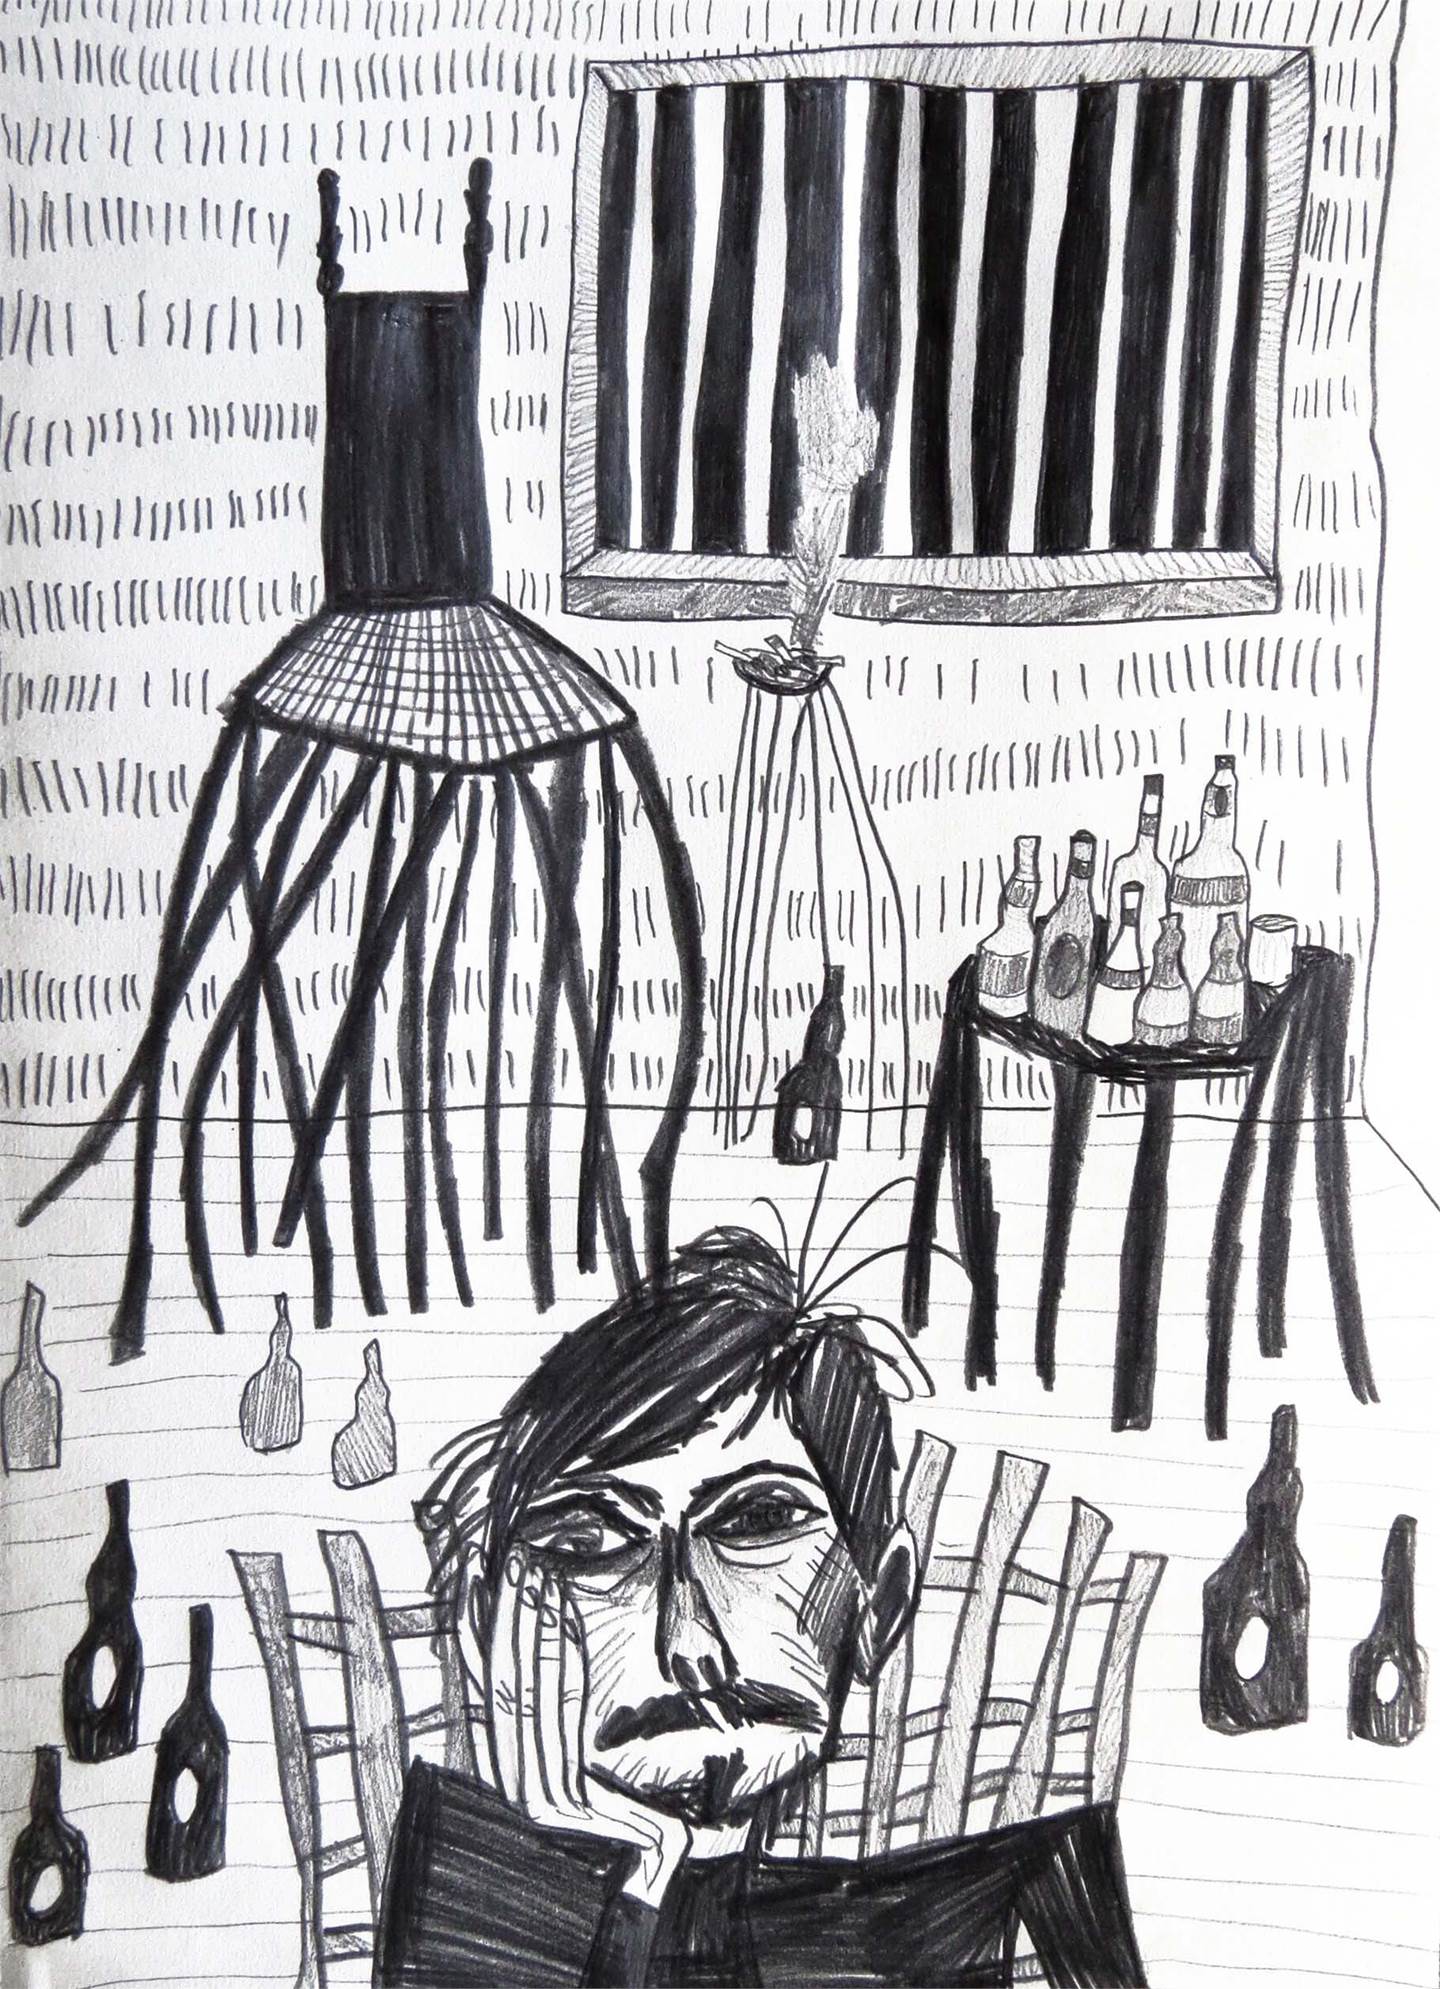 25. No quarto, Desenho e Ilustração Carvão Figura Humana original por Hugo Castilho